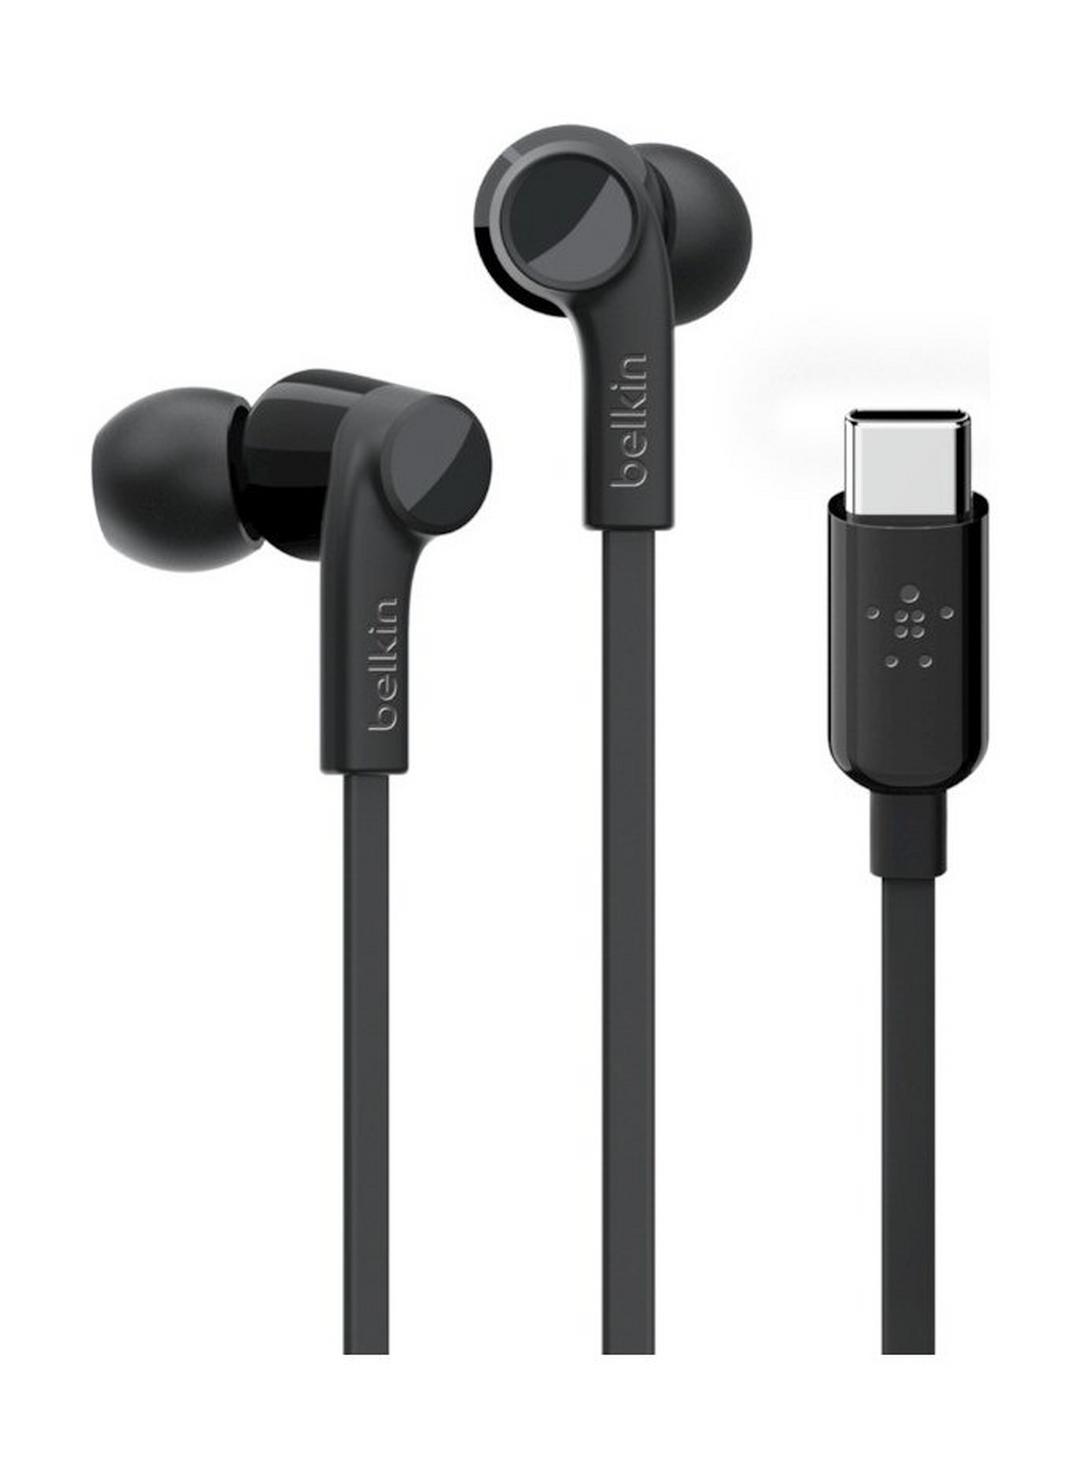 Belkin Rockstar Headphones with USB-C Connector - Black